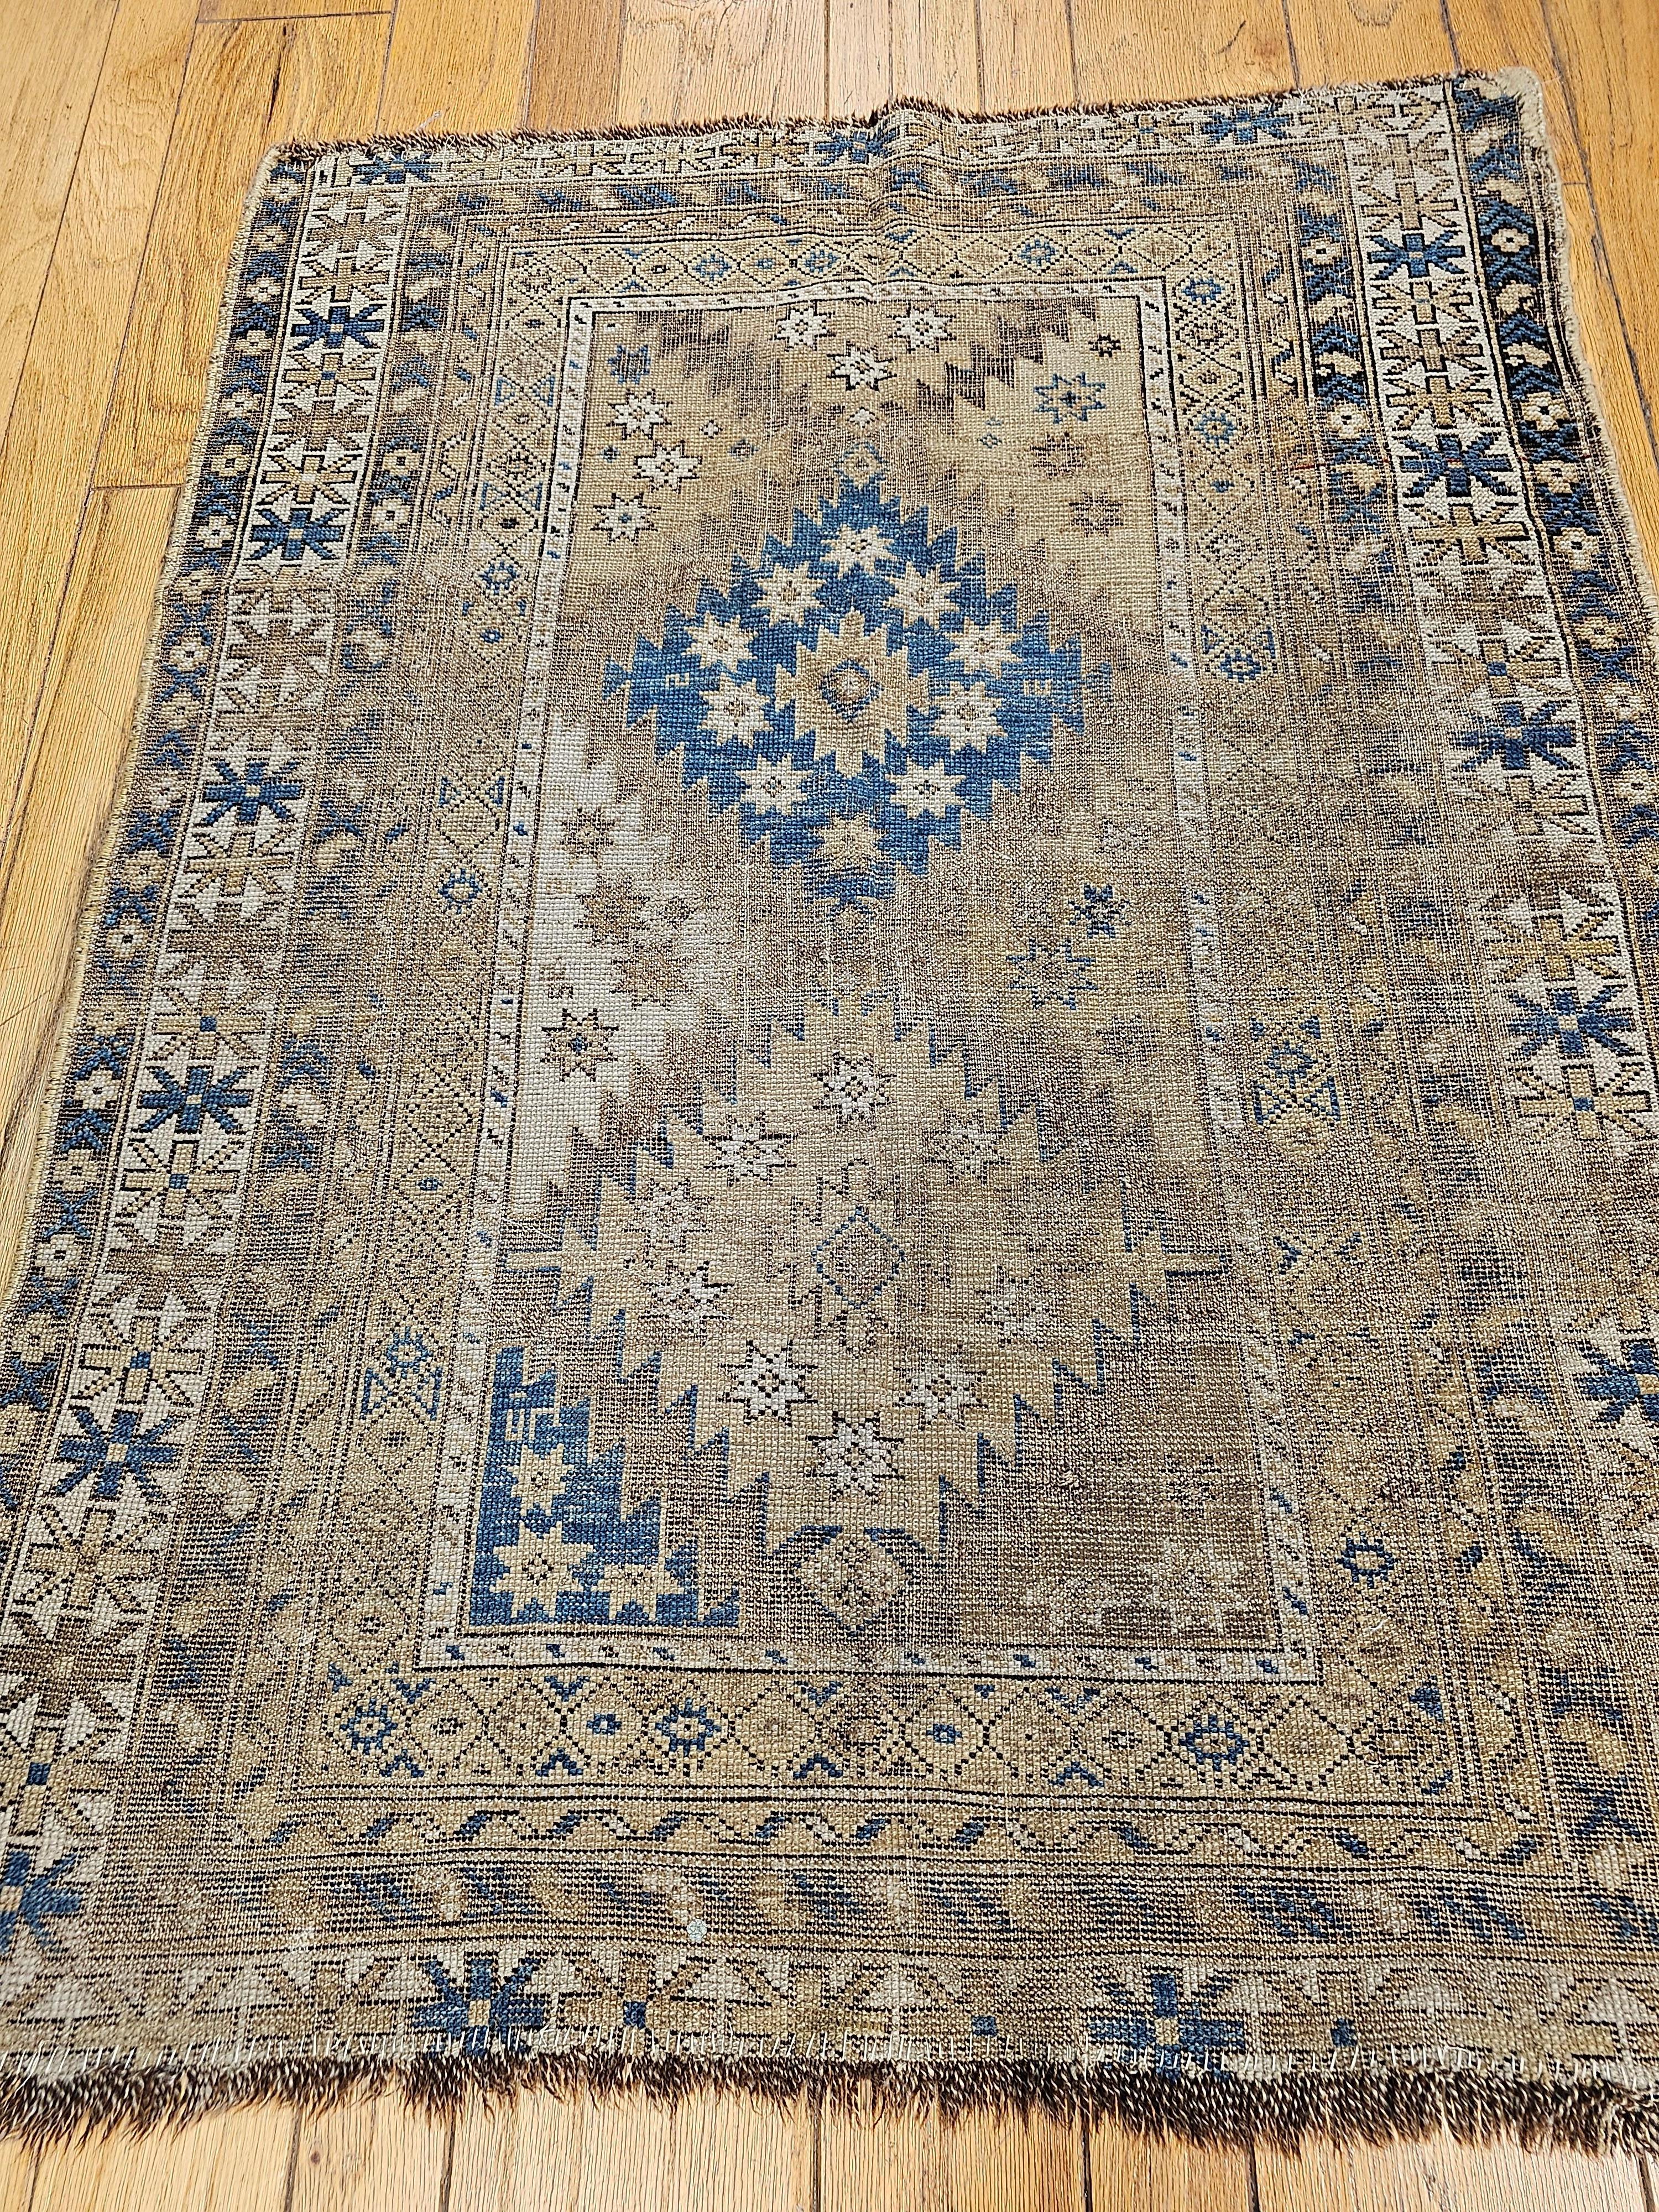 Antiker kaukasischer Schirwan-Teppich in blassem Französisch Blau, Elfenbein und Schokoladenfarben.  Dieser schöne Schirwan-Dorfteppich wurde in der Region Aserbaidschan im südlichen Kaukasus gewebt.  Der Teppich Shirvan hat ein dreifaches